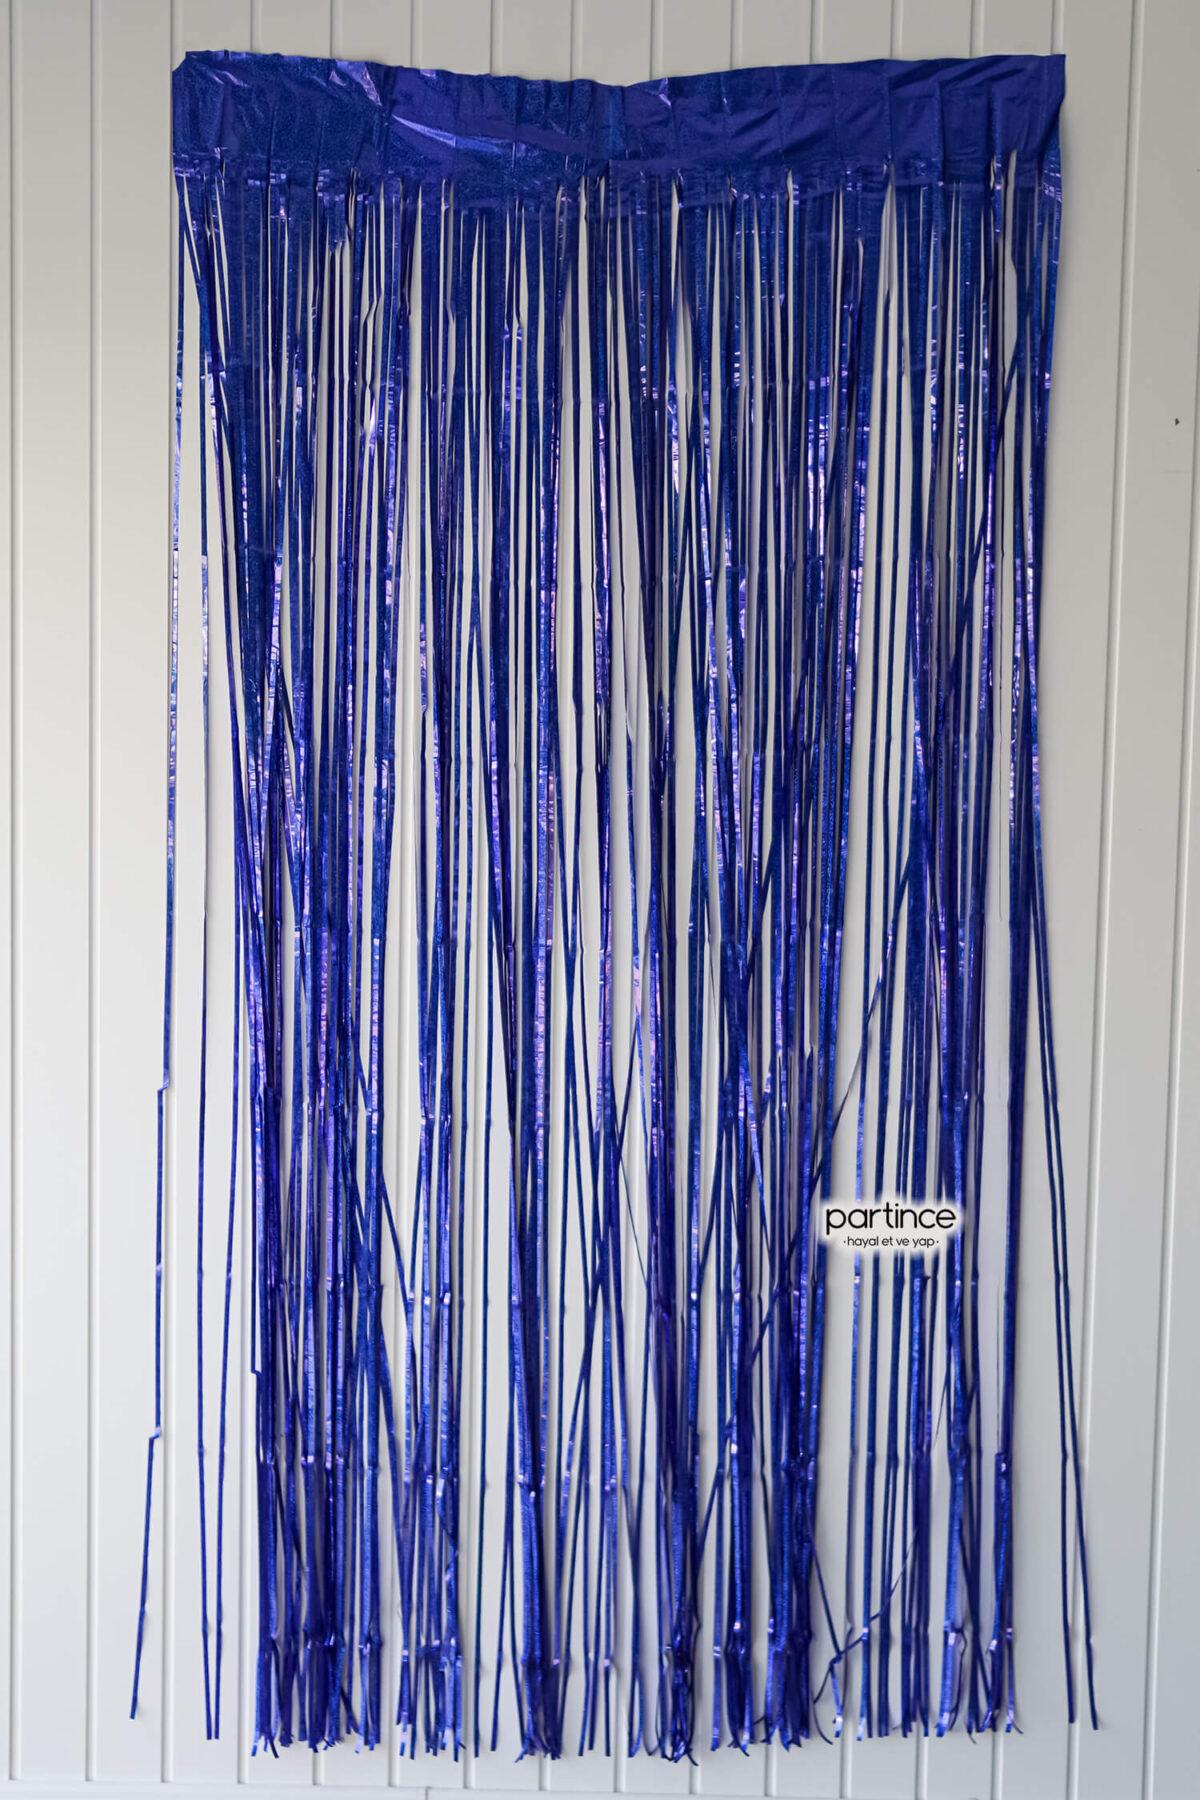 Kapı perdesi hologramlı mavi 90 cm * 200 cm